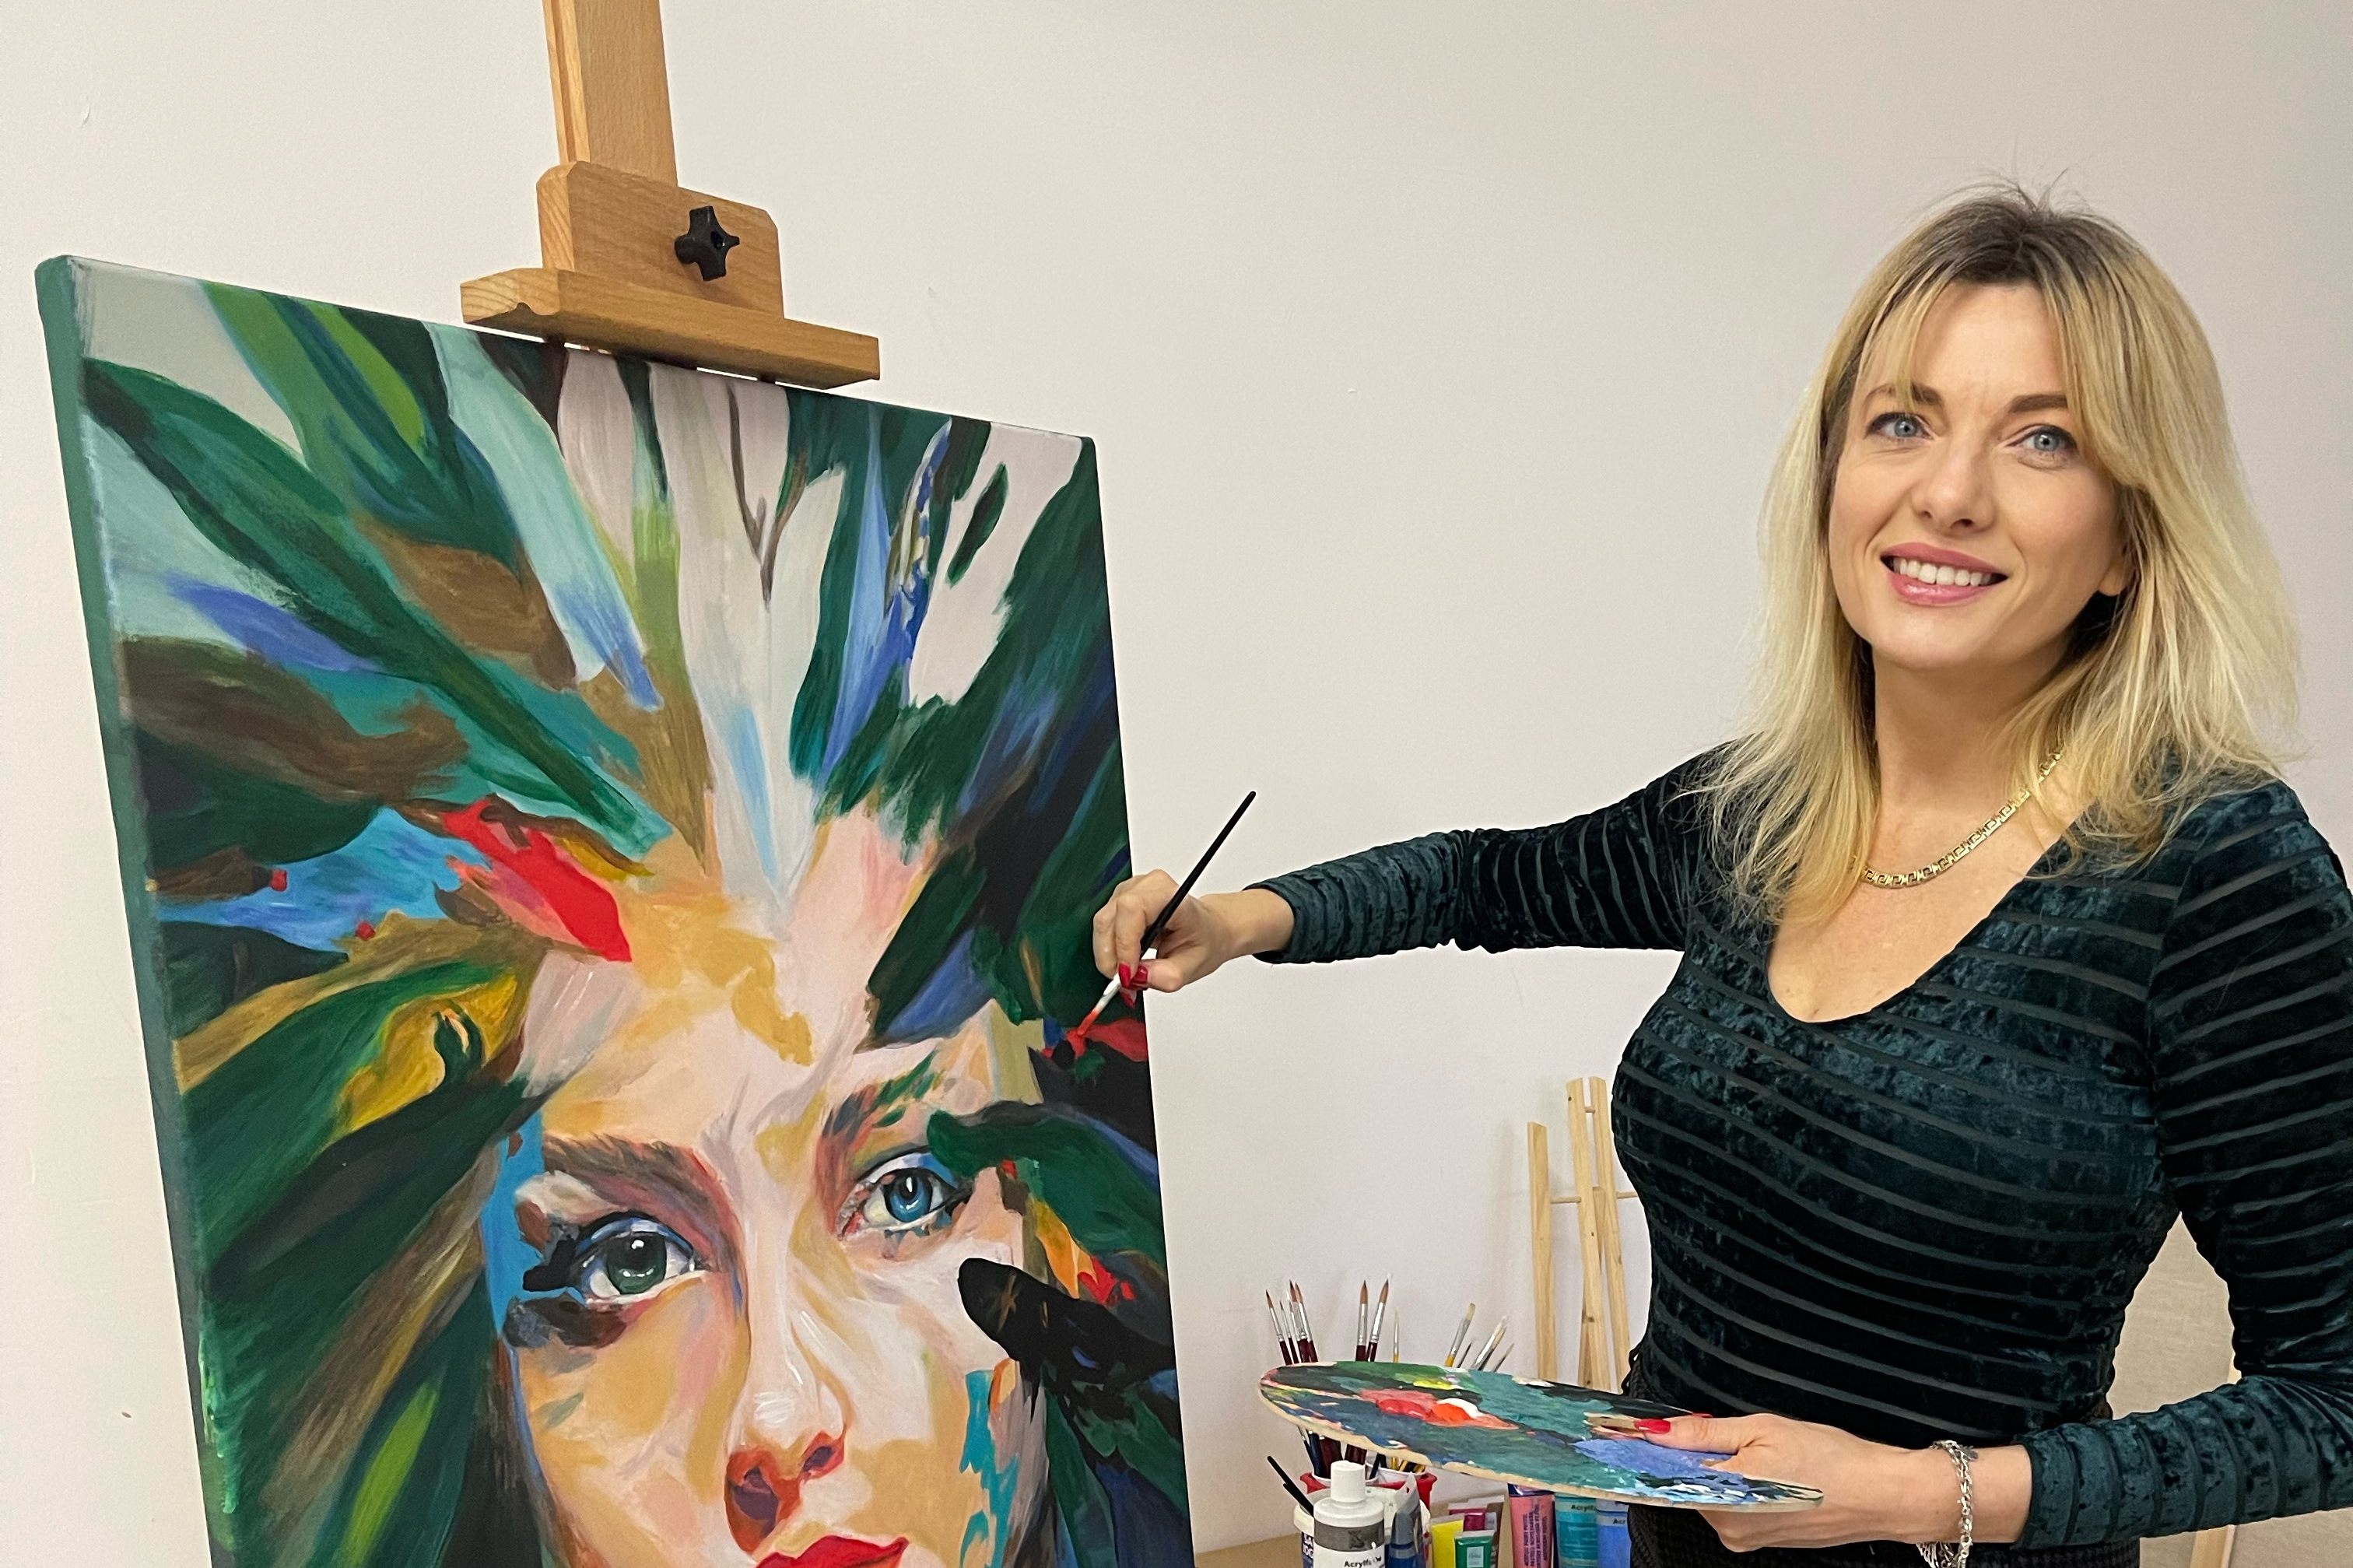 Kobieta ubrana na czarno maluje obraz. W lewej ręce trzyma paletę, w prawej pędzel. Na obrazie twarz kobiety, która zamiast włosów ma namalowane kolorowe promienie.